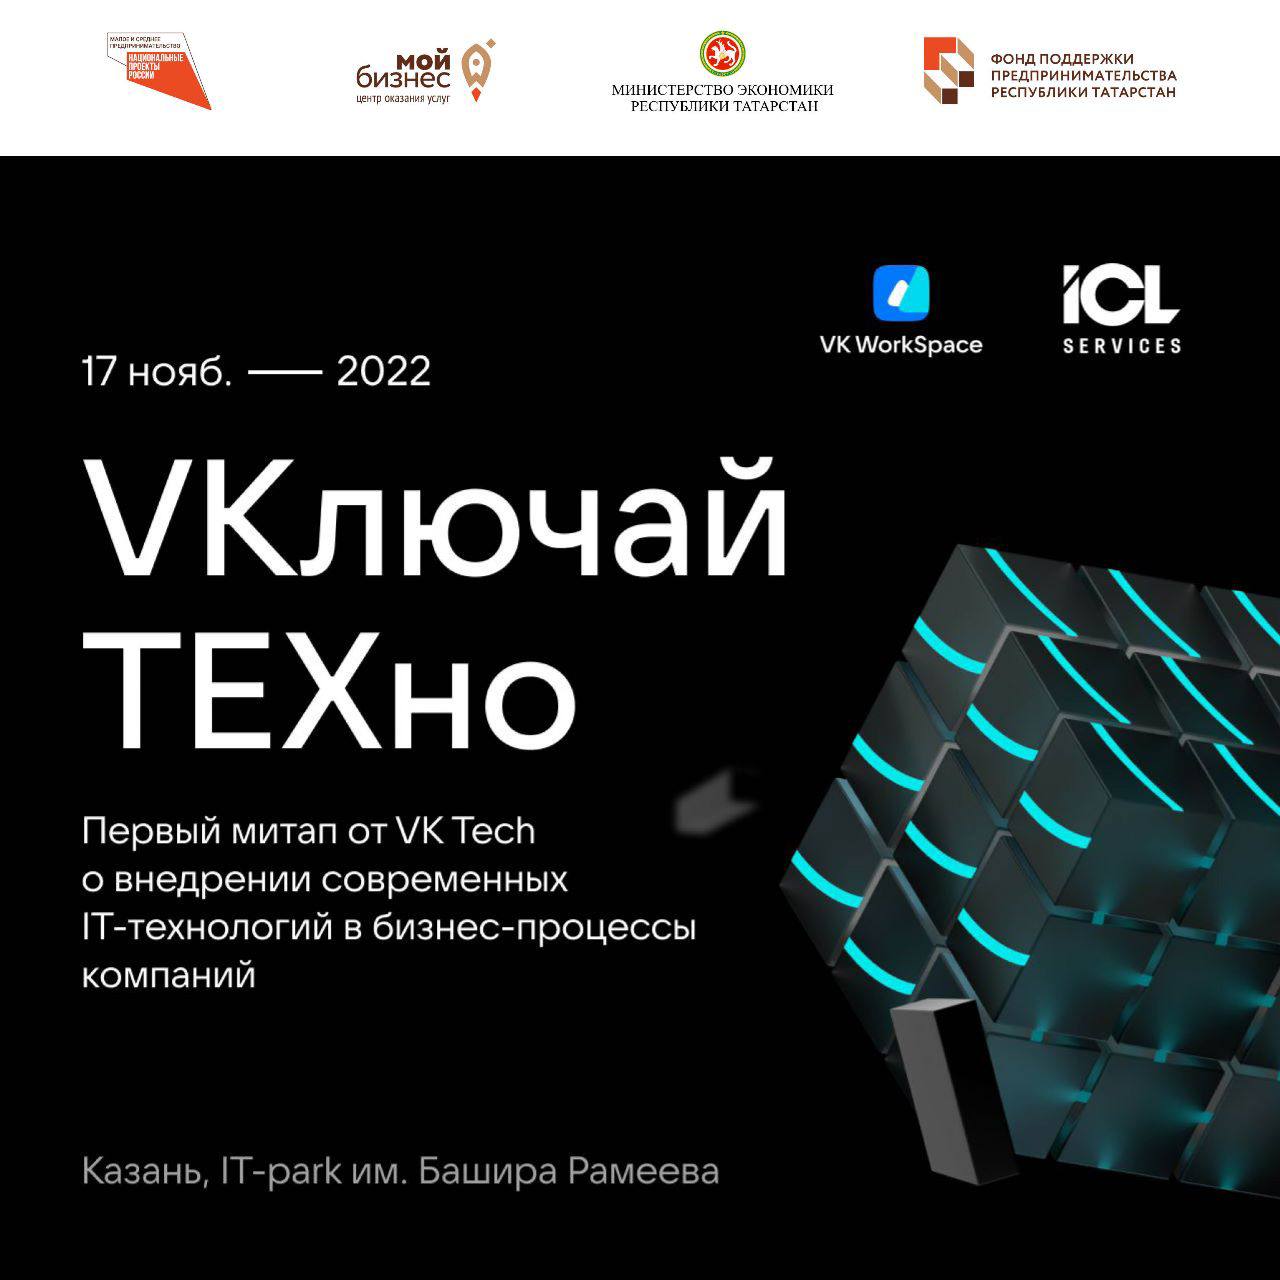 17 ноября VK совместно с ICL Services проведет первый в Казани митап по ИТ для МСБ.